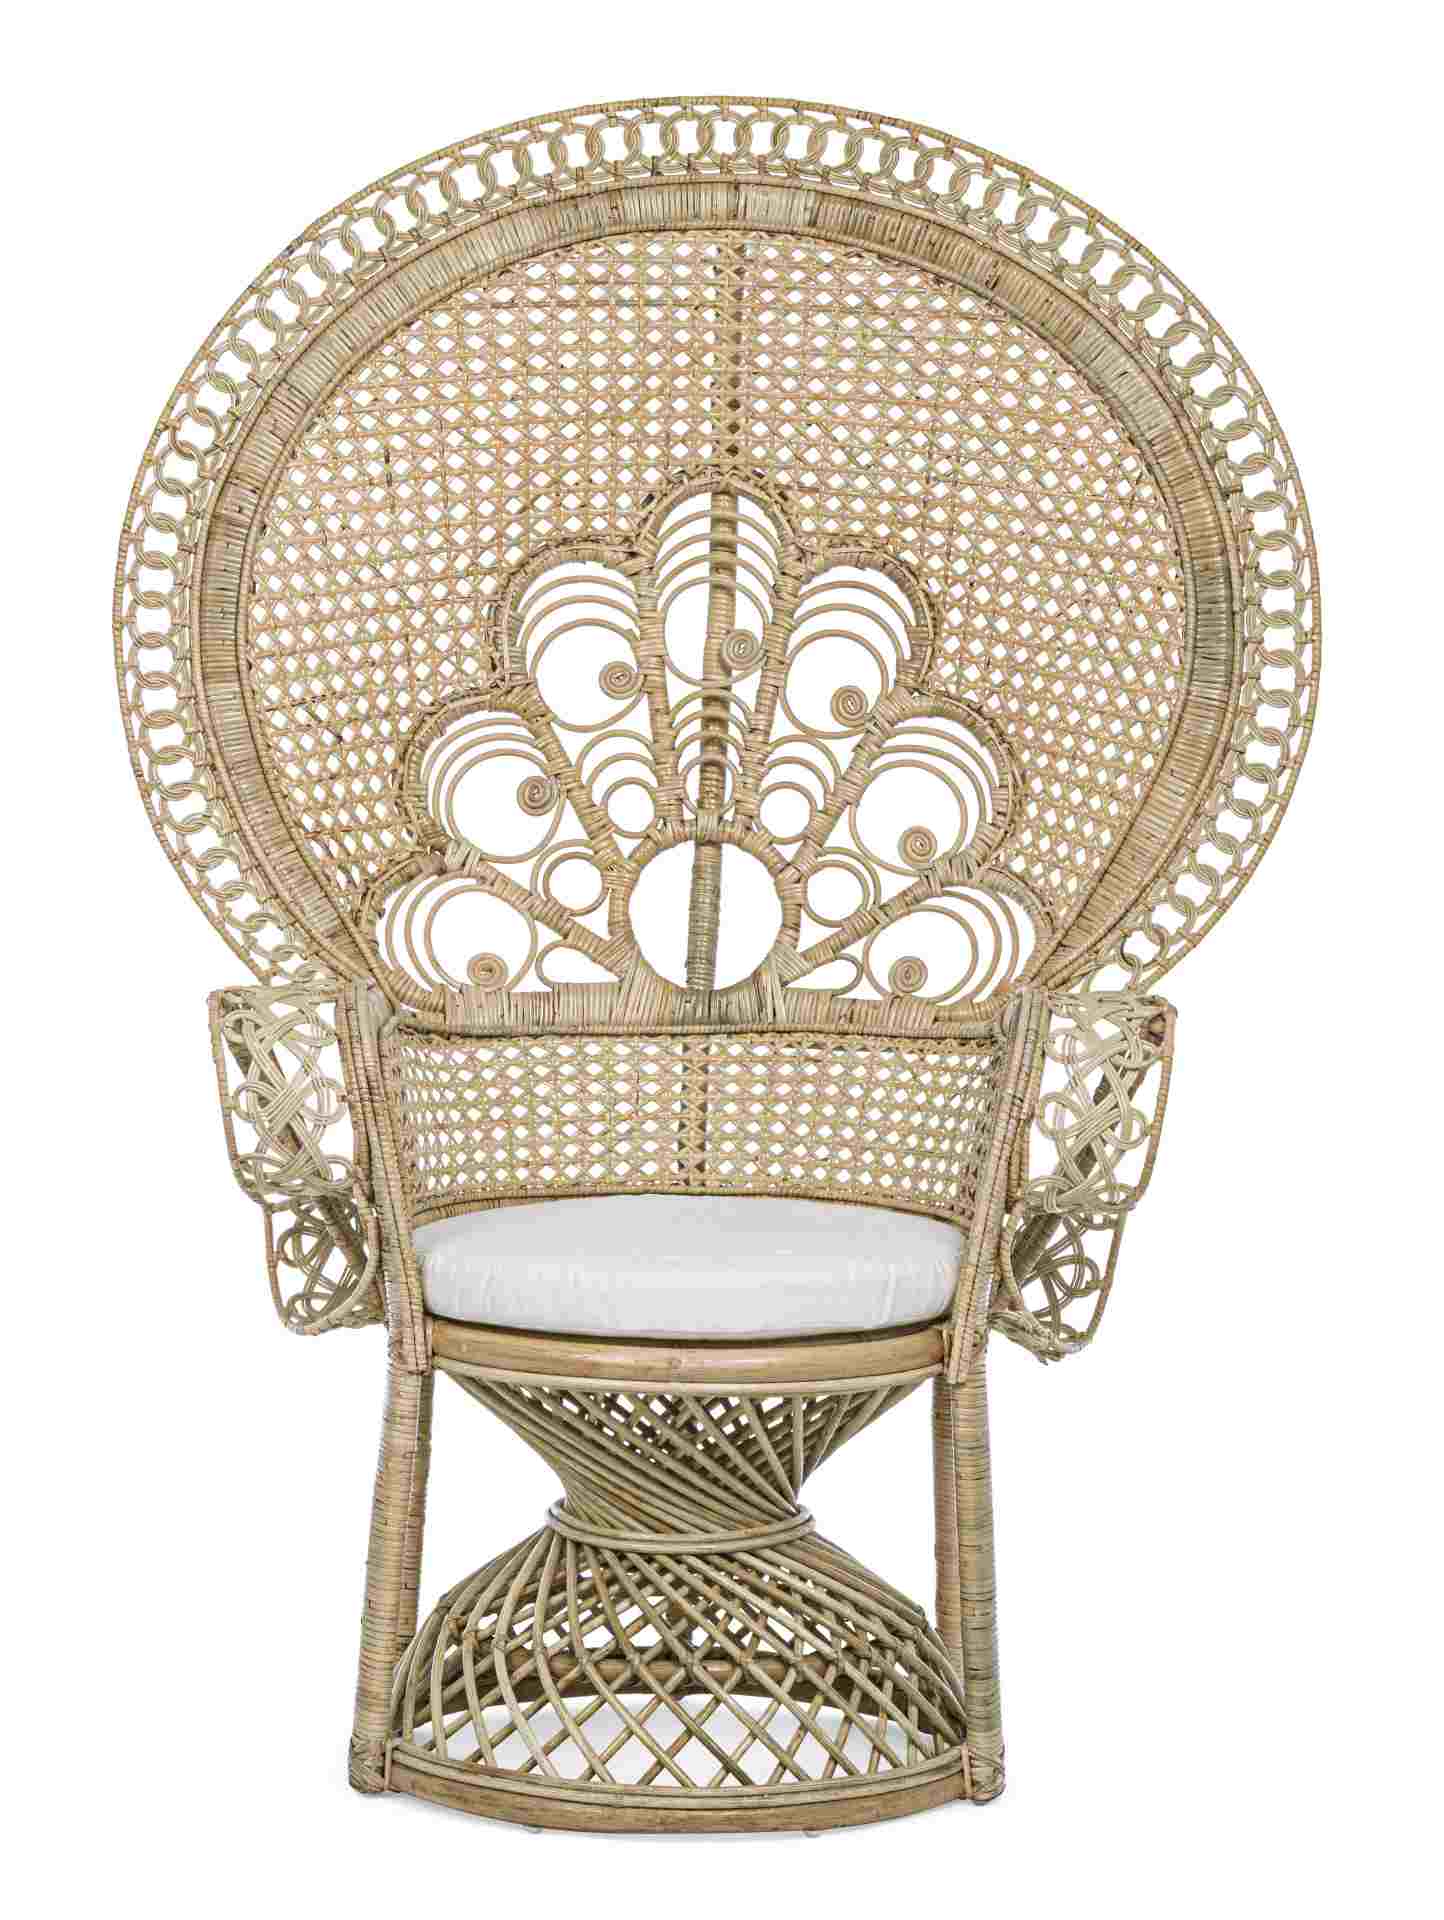 Der Sessel Peacock überzeugt mit seinem klassischen Design. Gefertigt wurde er aus Rattan, welches einen natürlichen Farbton besitzt. Das Gestell ist auch aus Rattan. Der Sessel besitzt eine Sitzhöhe von 47 cm. Die Breite beträgt 106 cm.